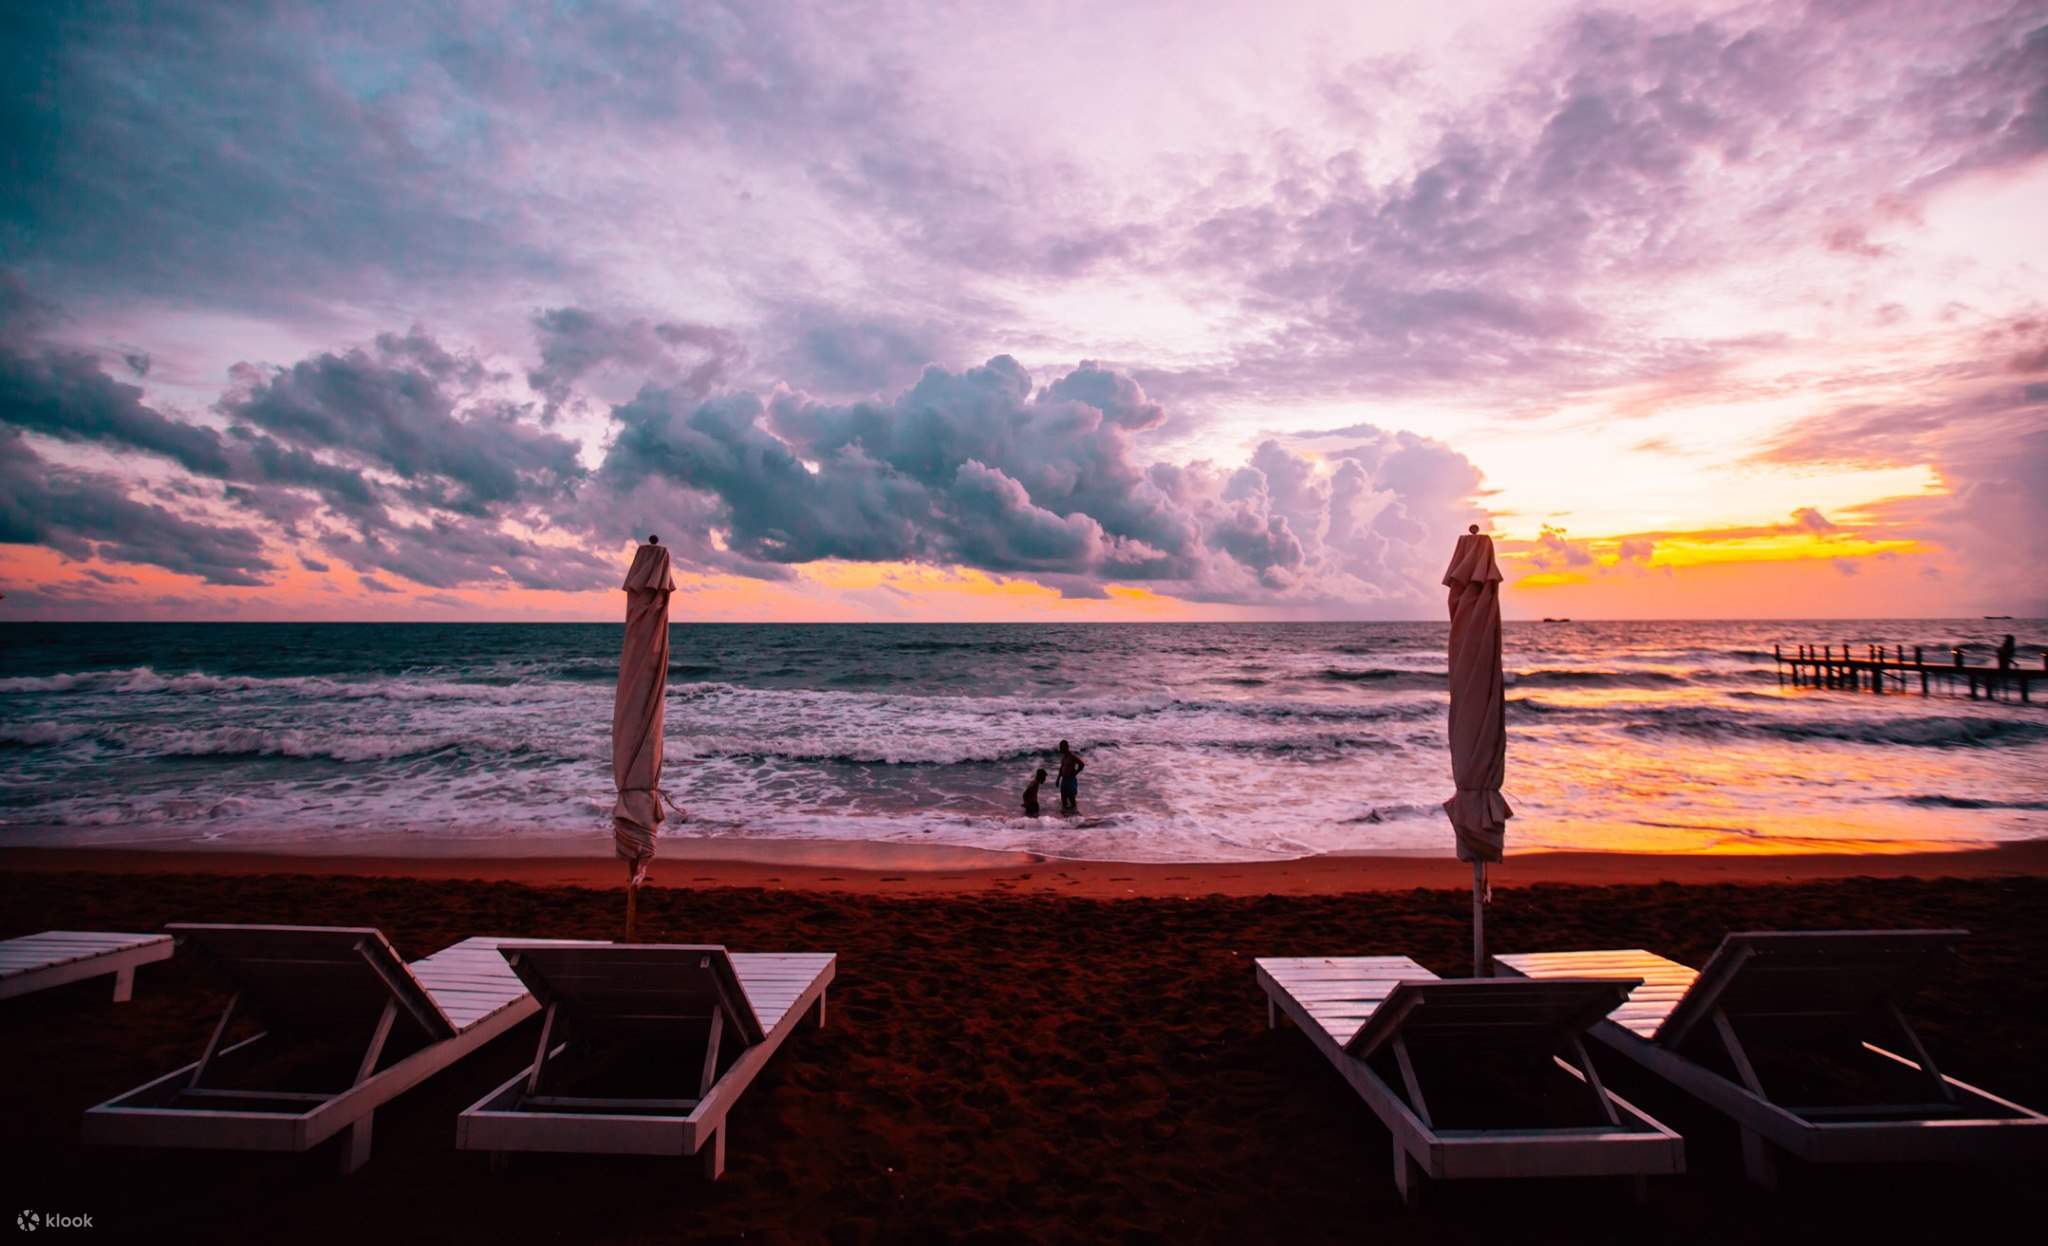 Sanato Beach Club: Nếu bạn đang tìm kiếm một địa điểm nghỉ dưỡng lý tưởng để thư giãn và tận hưởng cuộc sống, Sanato Beach Club chắc chắn là một lựa chọn không thể bỏ qua. Hãy xem hình ảnh của khu nghỉ dưỡng đẹp mắt này để cảm nhận được sự tuyệt vời của nó!